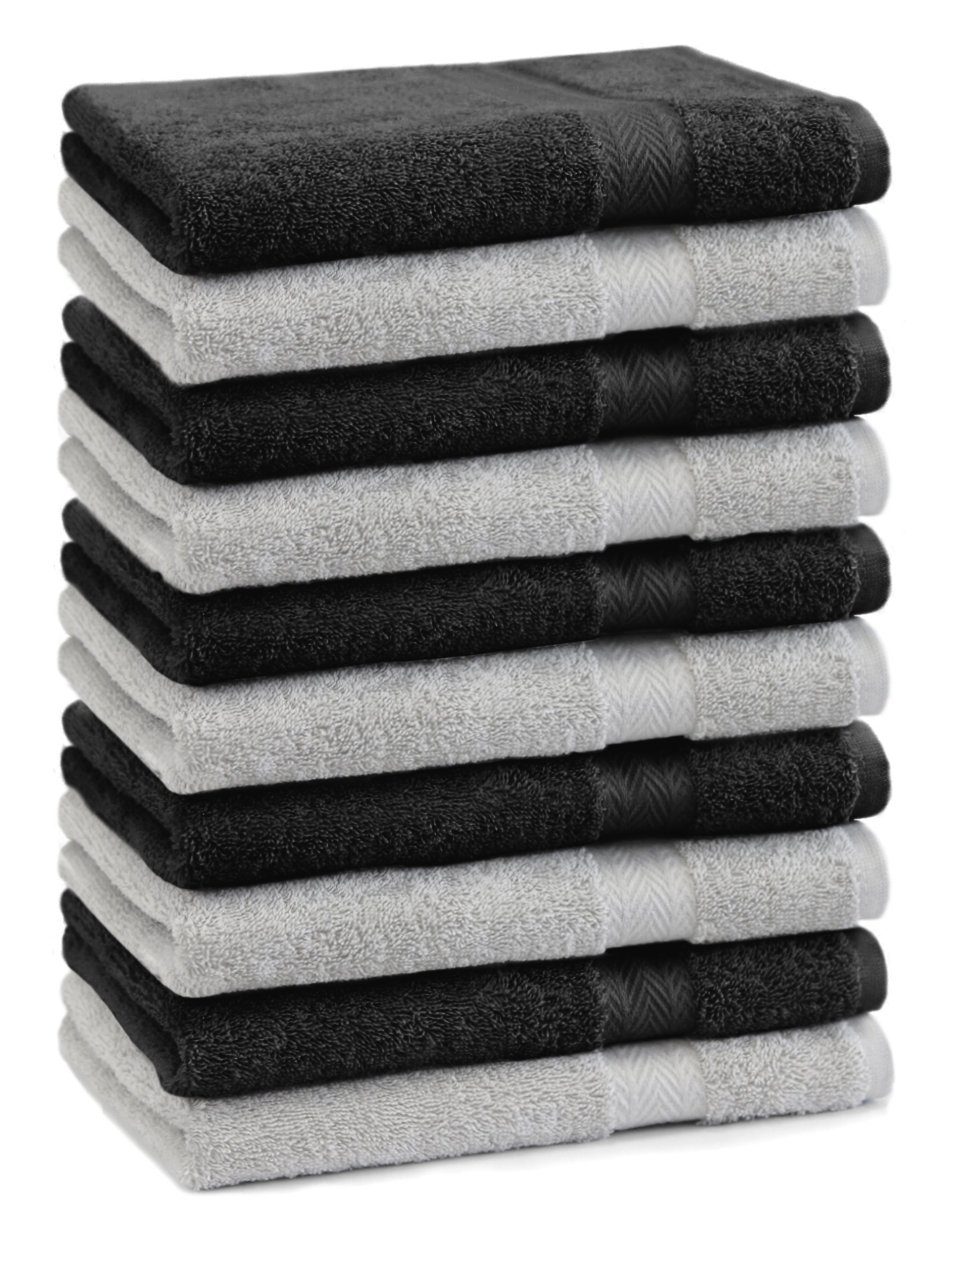 Betz und Gästehandtücher Premium cm Farbe schwarz, 100% 30x50 silbergrau Baumwolle Baumwolle Gästehandtücher Stück 10 100% Gästetuch-Set